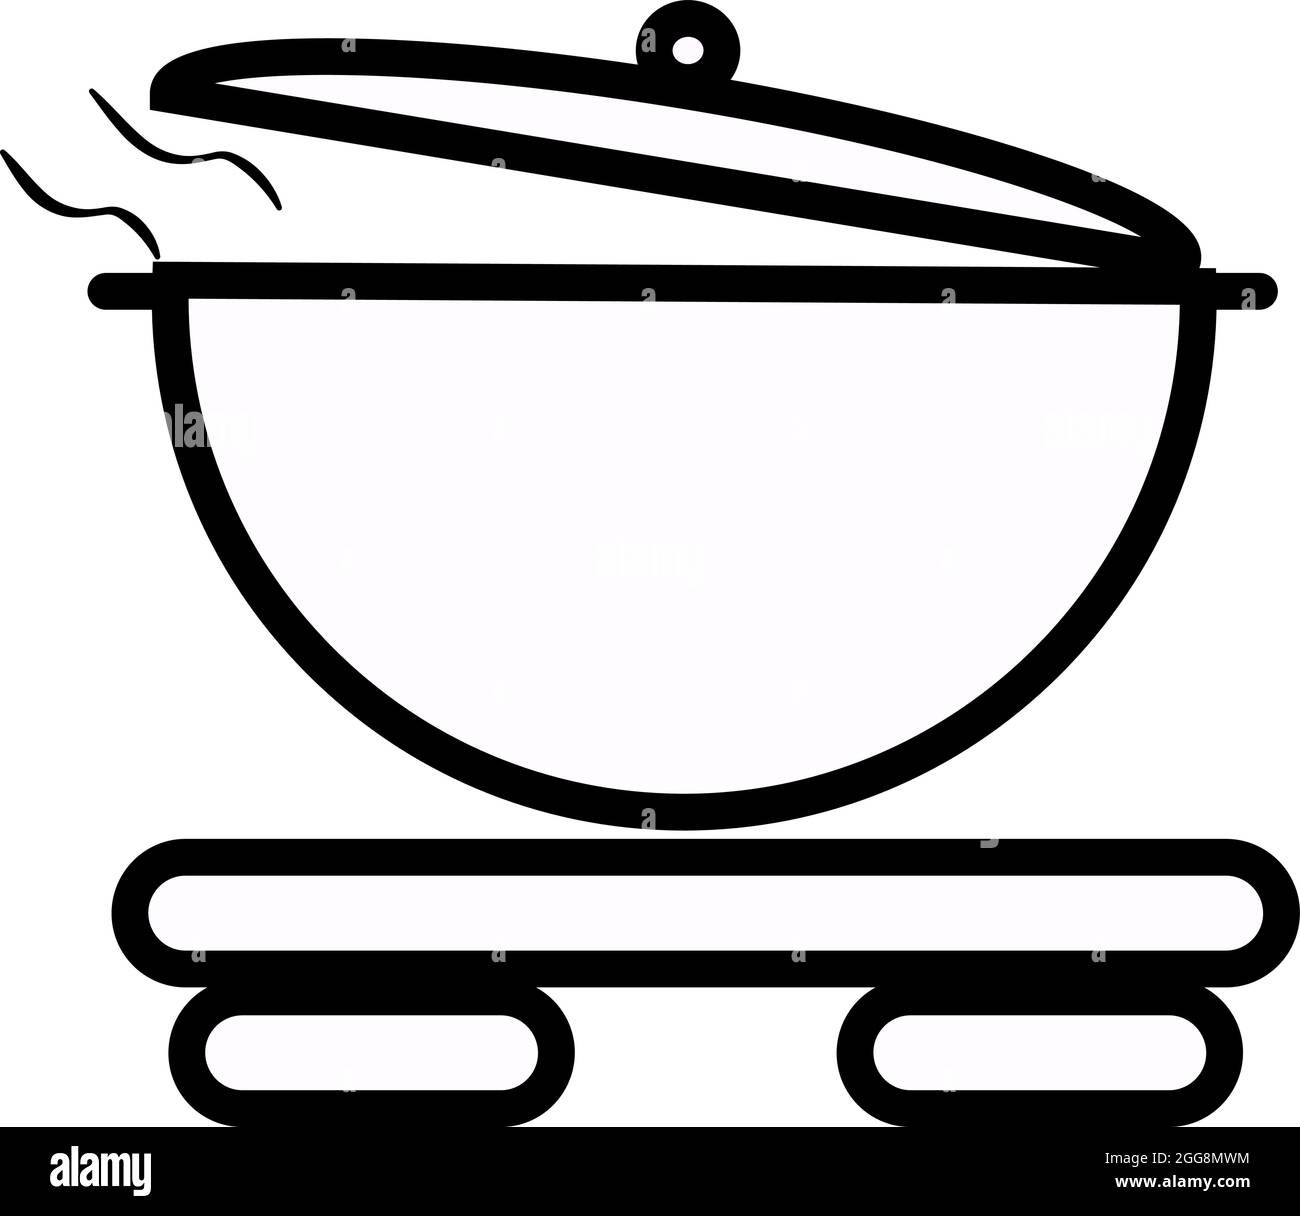 Soupes chinoises, illustration, vecteur, sur fond blanc. Illustration de Vecteur